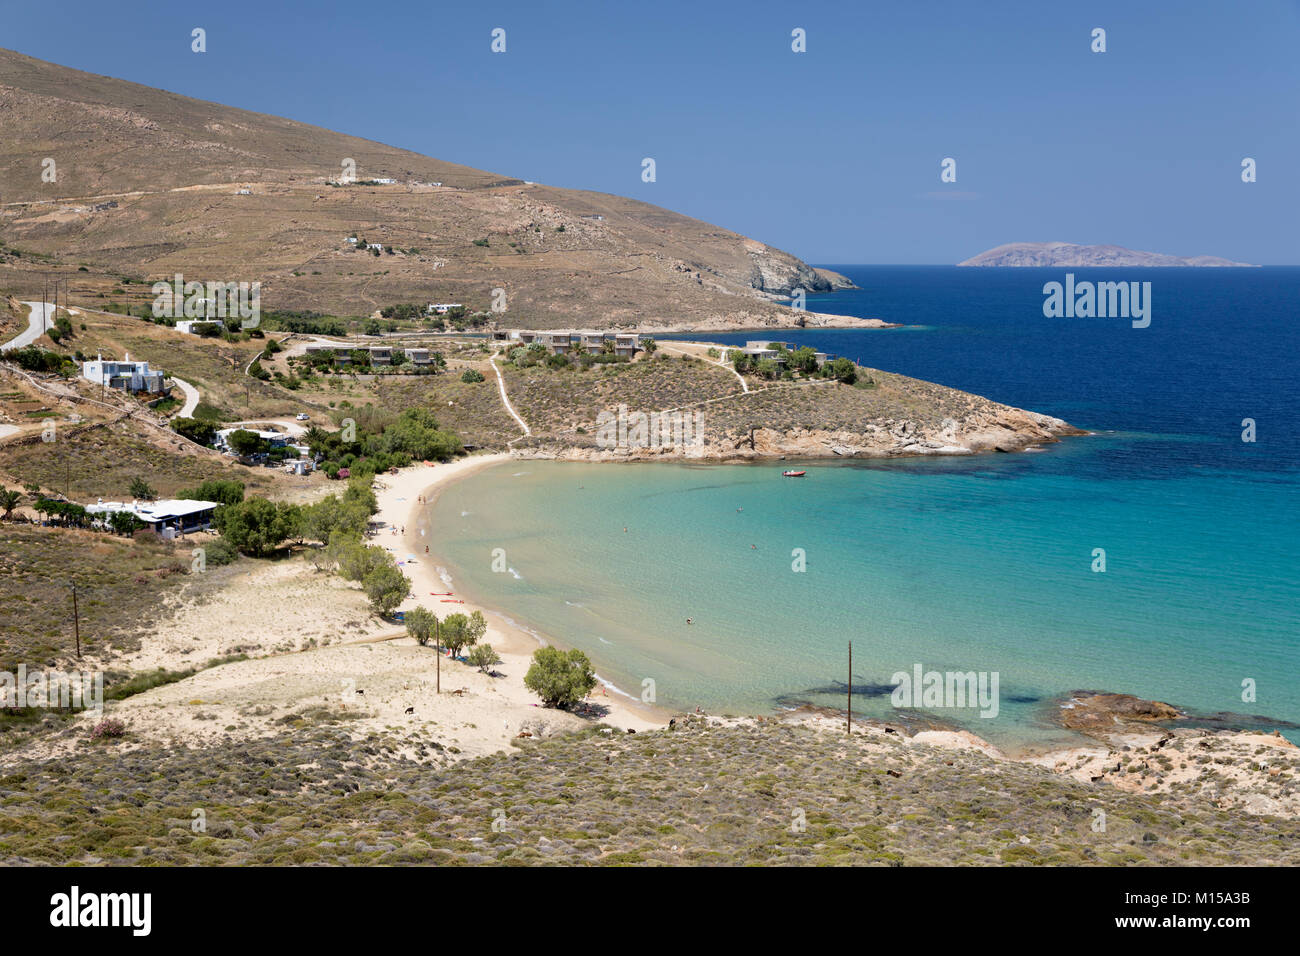 Vista sobre la playa de Psili Ammos en la costa oriental de la isla de Serifos, Cyclades, islas griegas del Mar Egeo, Grecia, Europa Foto de stock